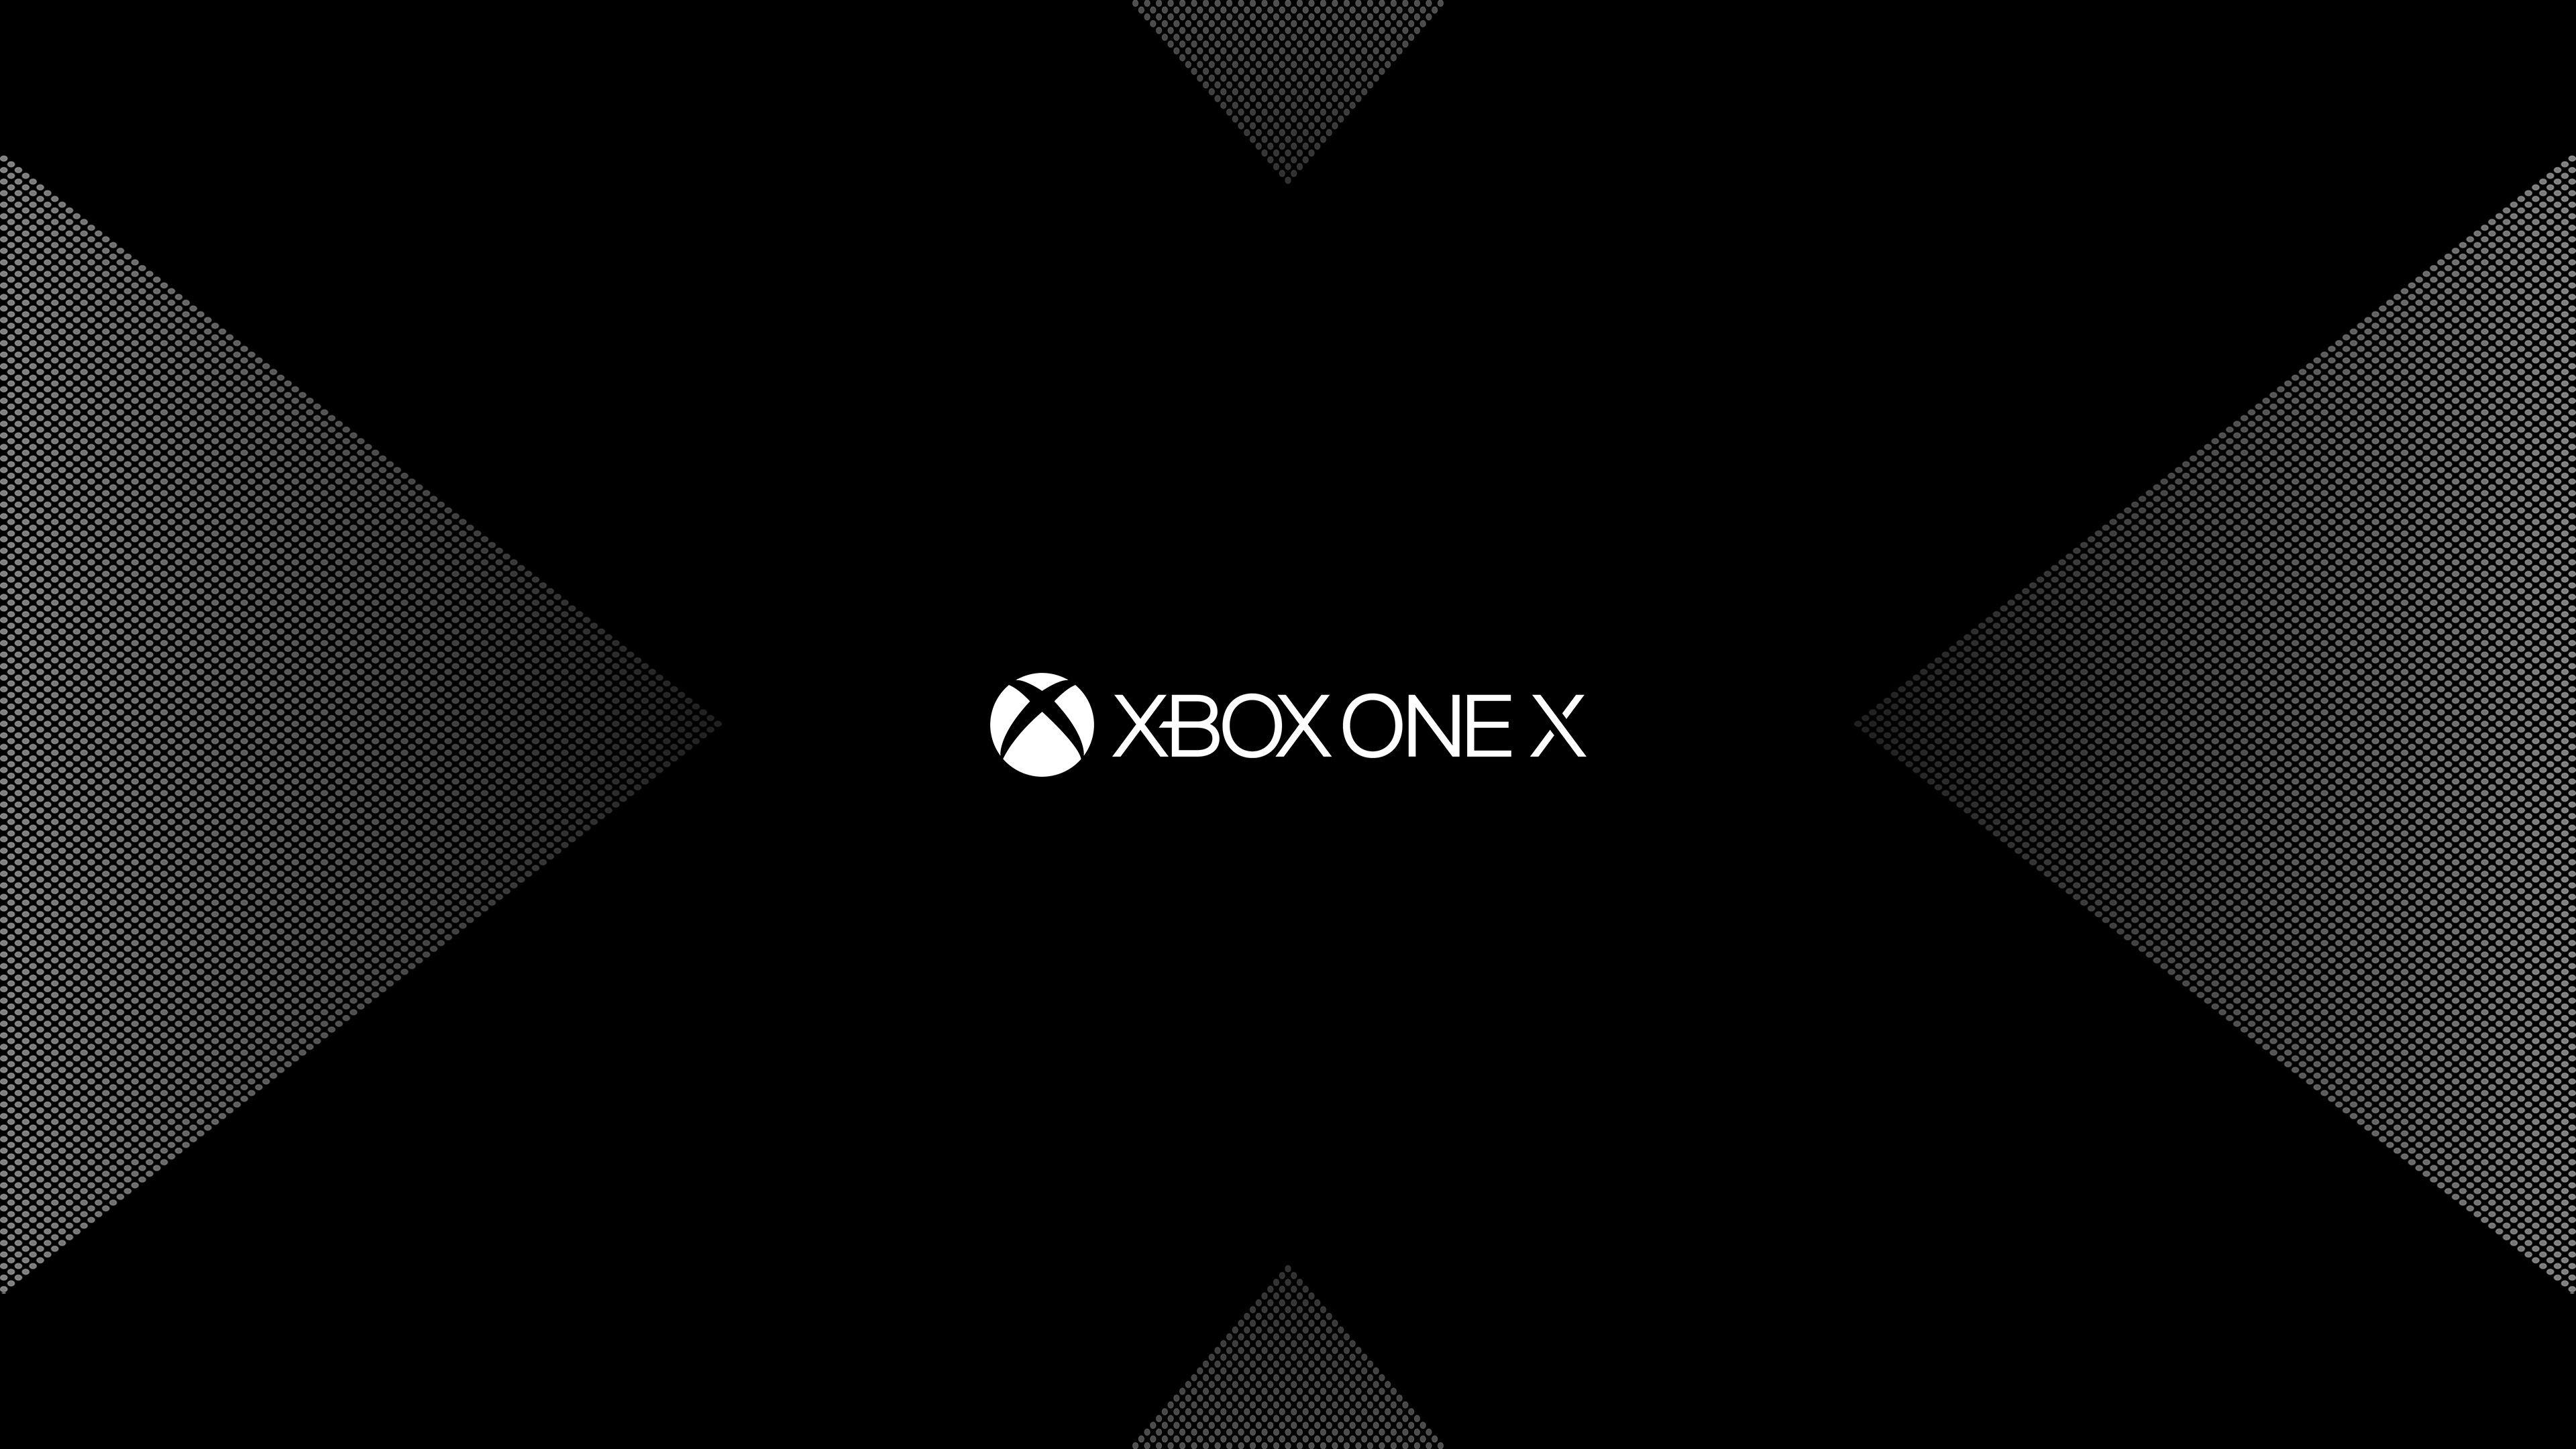 Hình nền Xbox One với độ phân giải 4K đỉnh cao - tất cả các chi tiết sắc nét tới từng đường nét, tới từng chi tiết siêu thực. Tận hưởng màn hình nền đẹp như một bức tranh thực sự trên chiếc máy Xbox One của bạn, và thế giới game sẽ thực sự trở nên sống động.